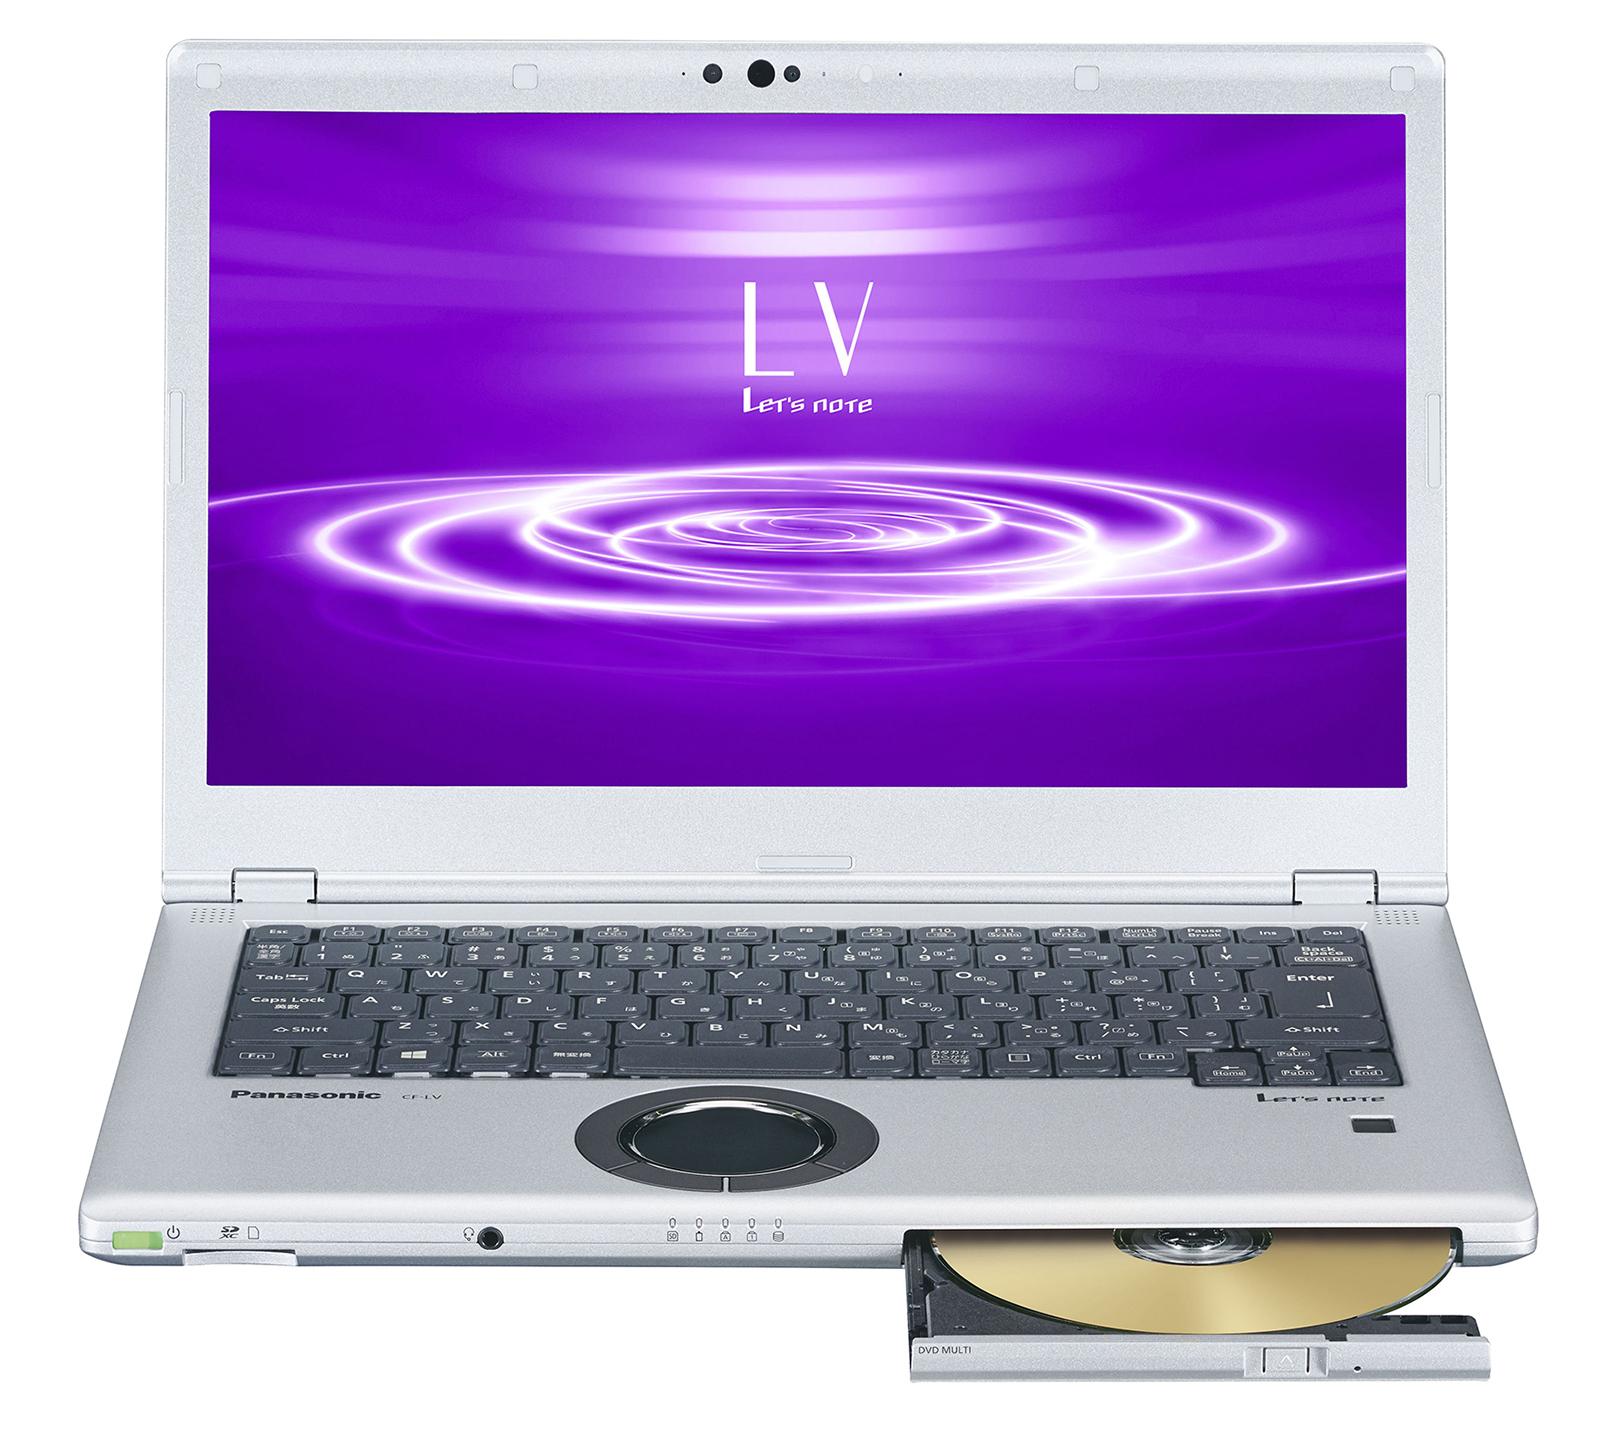 モバイルパソコン「Let's note」個人店頭向け 春モデル LV8 EURO DRESS スーパーマルチ